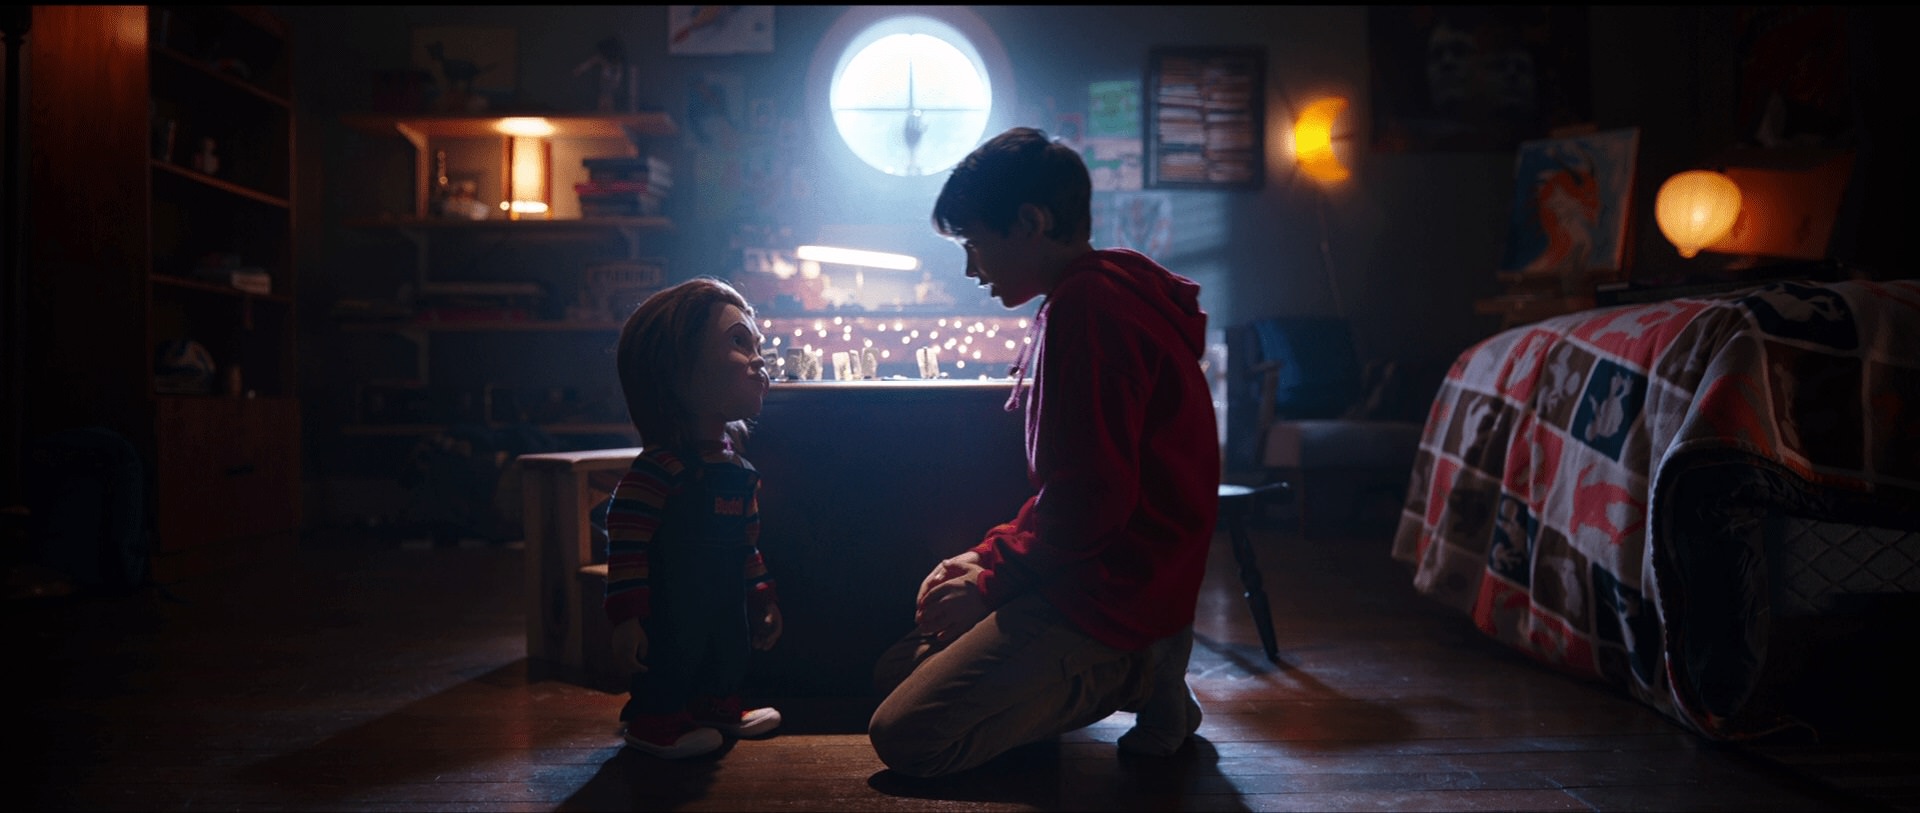 تعامل پسر بچه و عروسک در اتاق در فیلم بازی بچگانه (فیلم ۲۰۱۹)